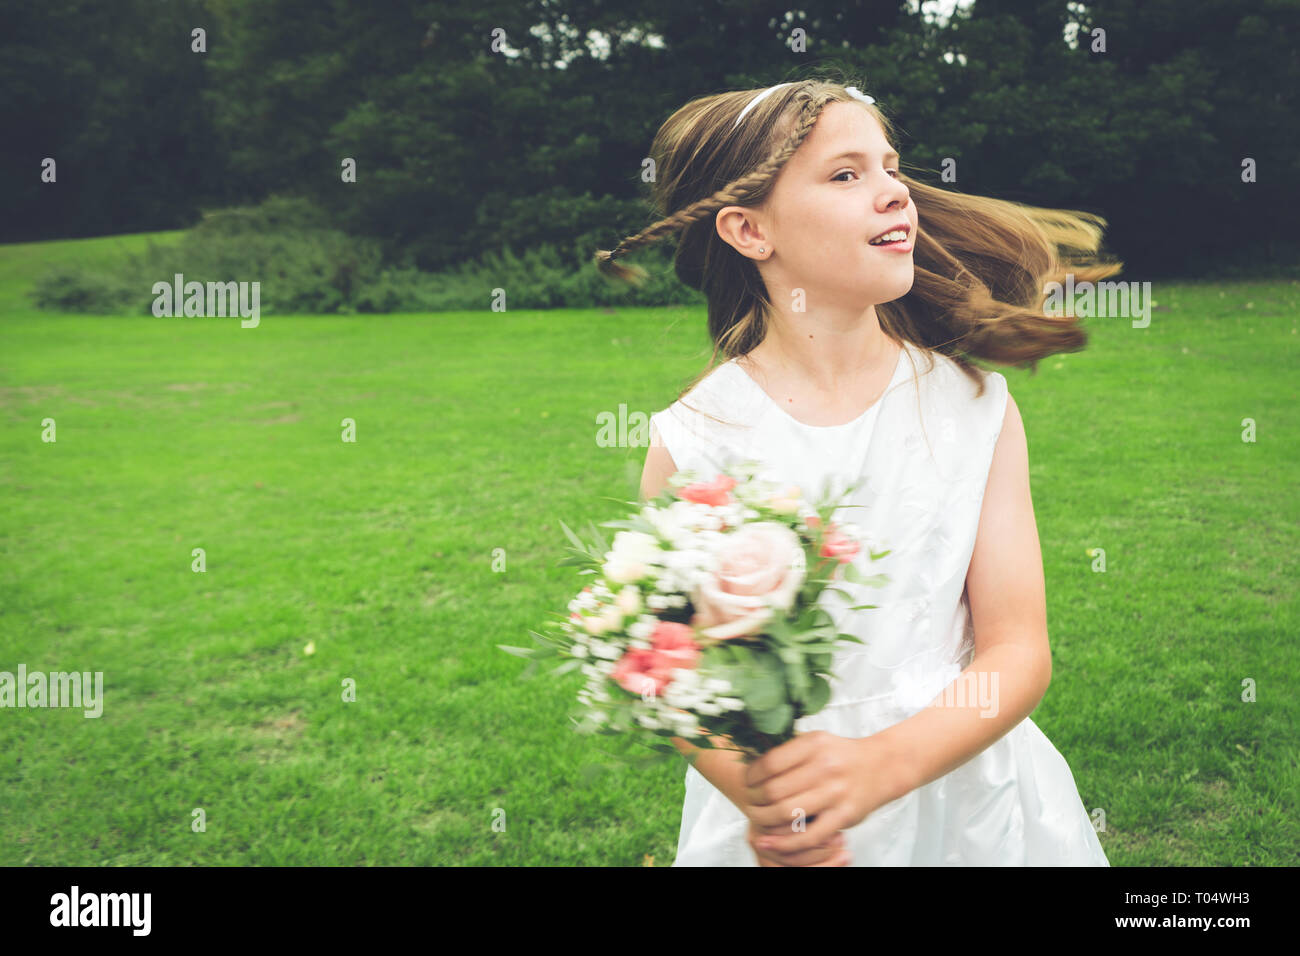 Ragazza giovane damigella dancing e la filatura in un parco che indossa un abito bianco e tenendo un rustico posy Foto Stock